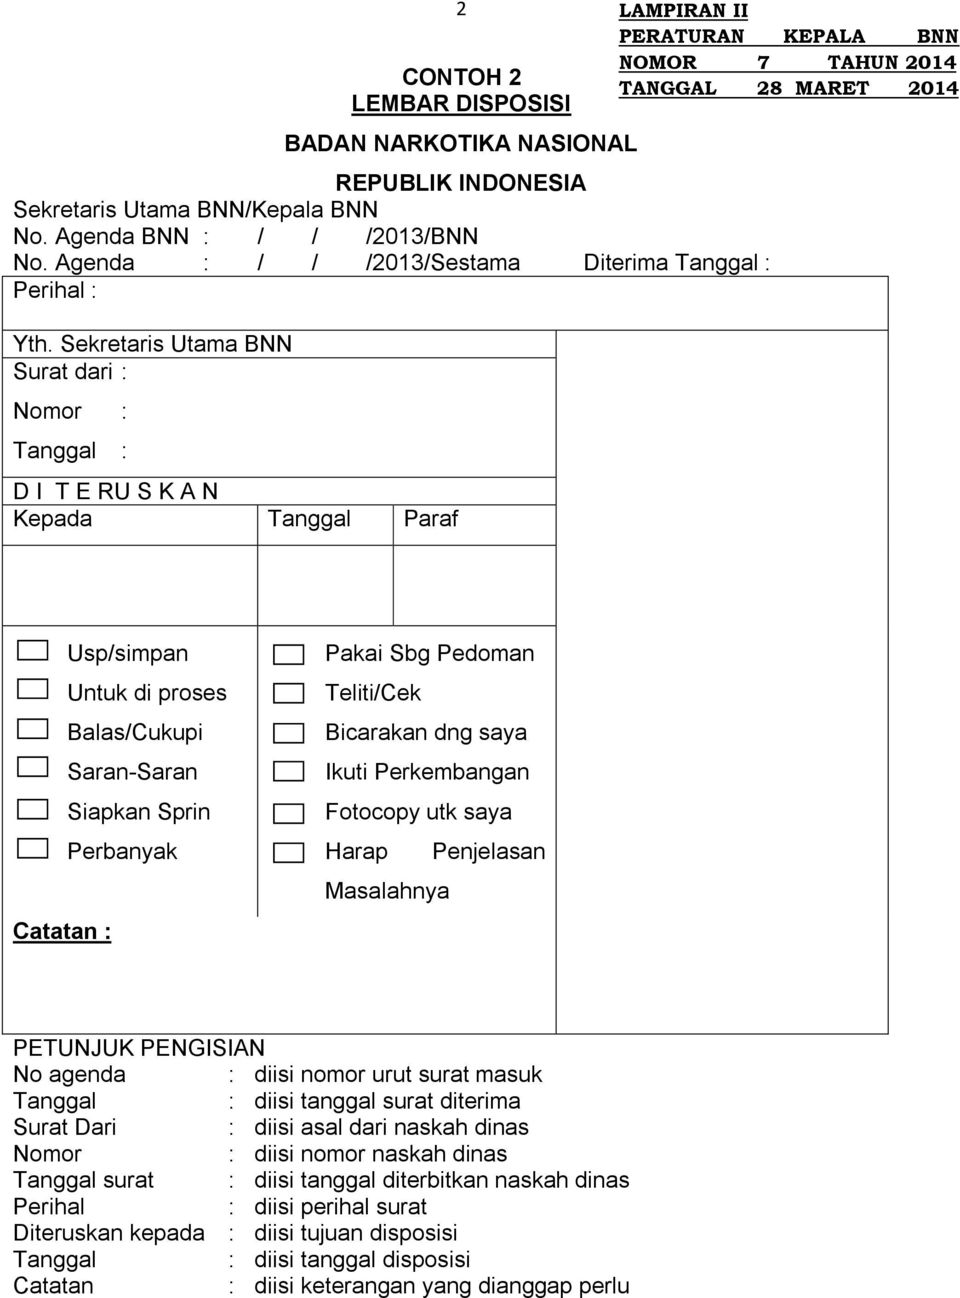 Badan Narkotika Nasional Republik Indonesia Pdf Free Download